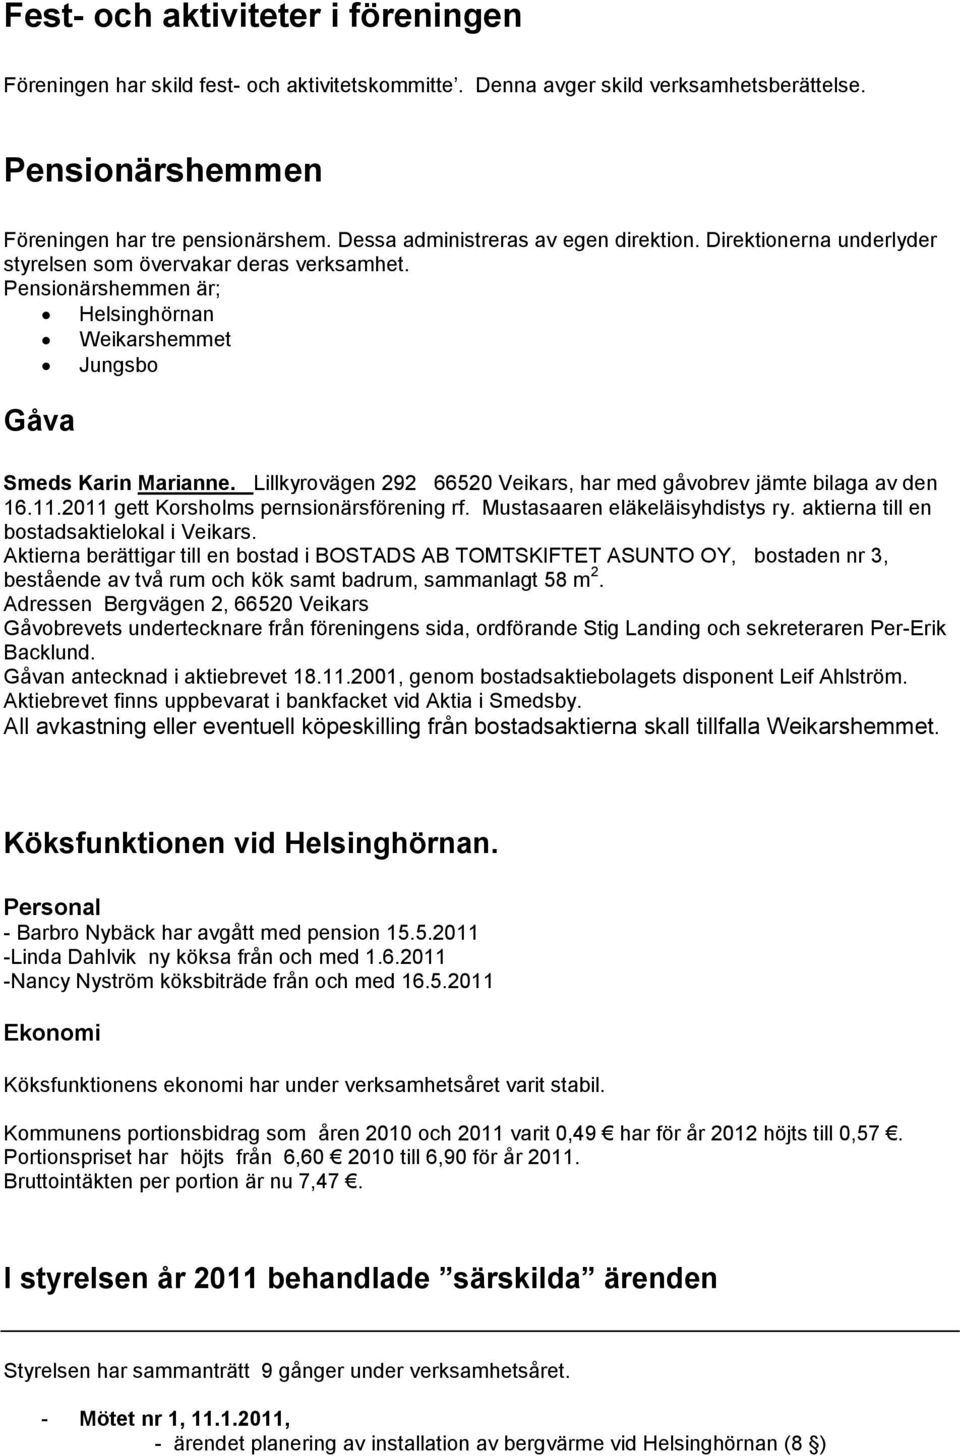 Lillkyrovägen 292 66520 Veikars, har med gåvobrev jämte bilaga av den 16.11.2011 gett Korsholms pernsionärsförening rf. Mustasaaren eläkeläisyhdistys ry. aktierna till en bostadsaktielokal i Veikars.